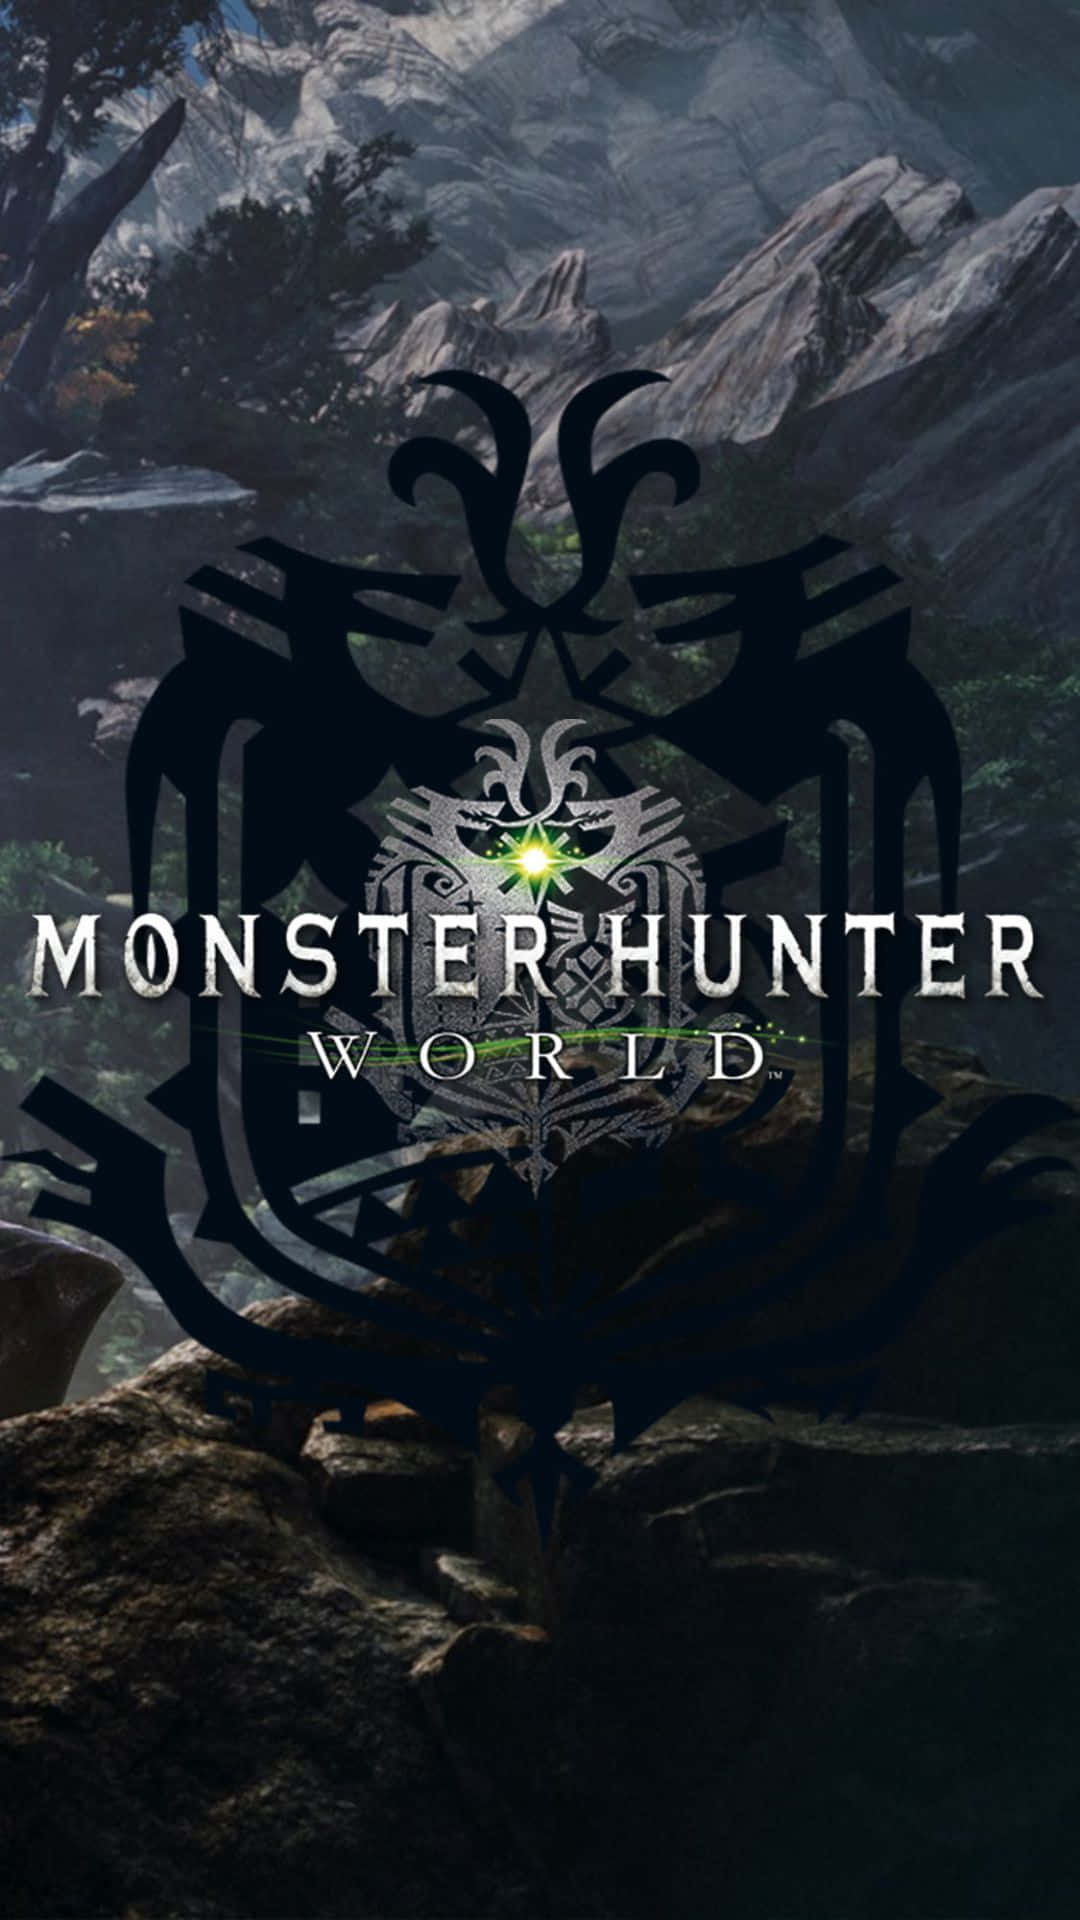 Viviun'avventura Indimenticabile E Unica Con Android Monster Hunter World.